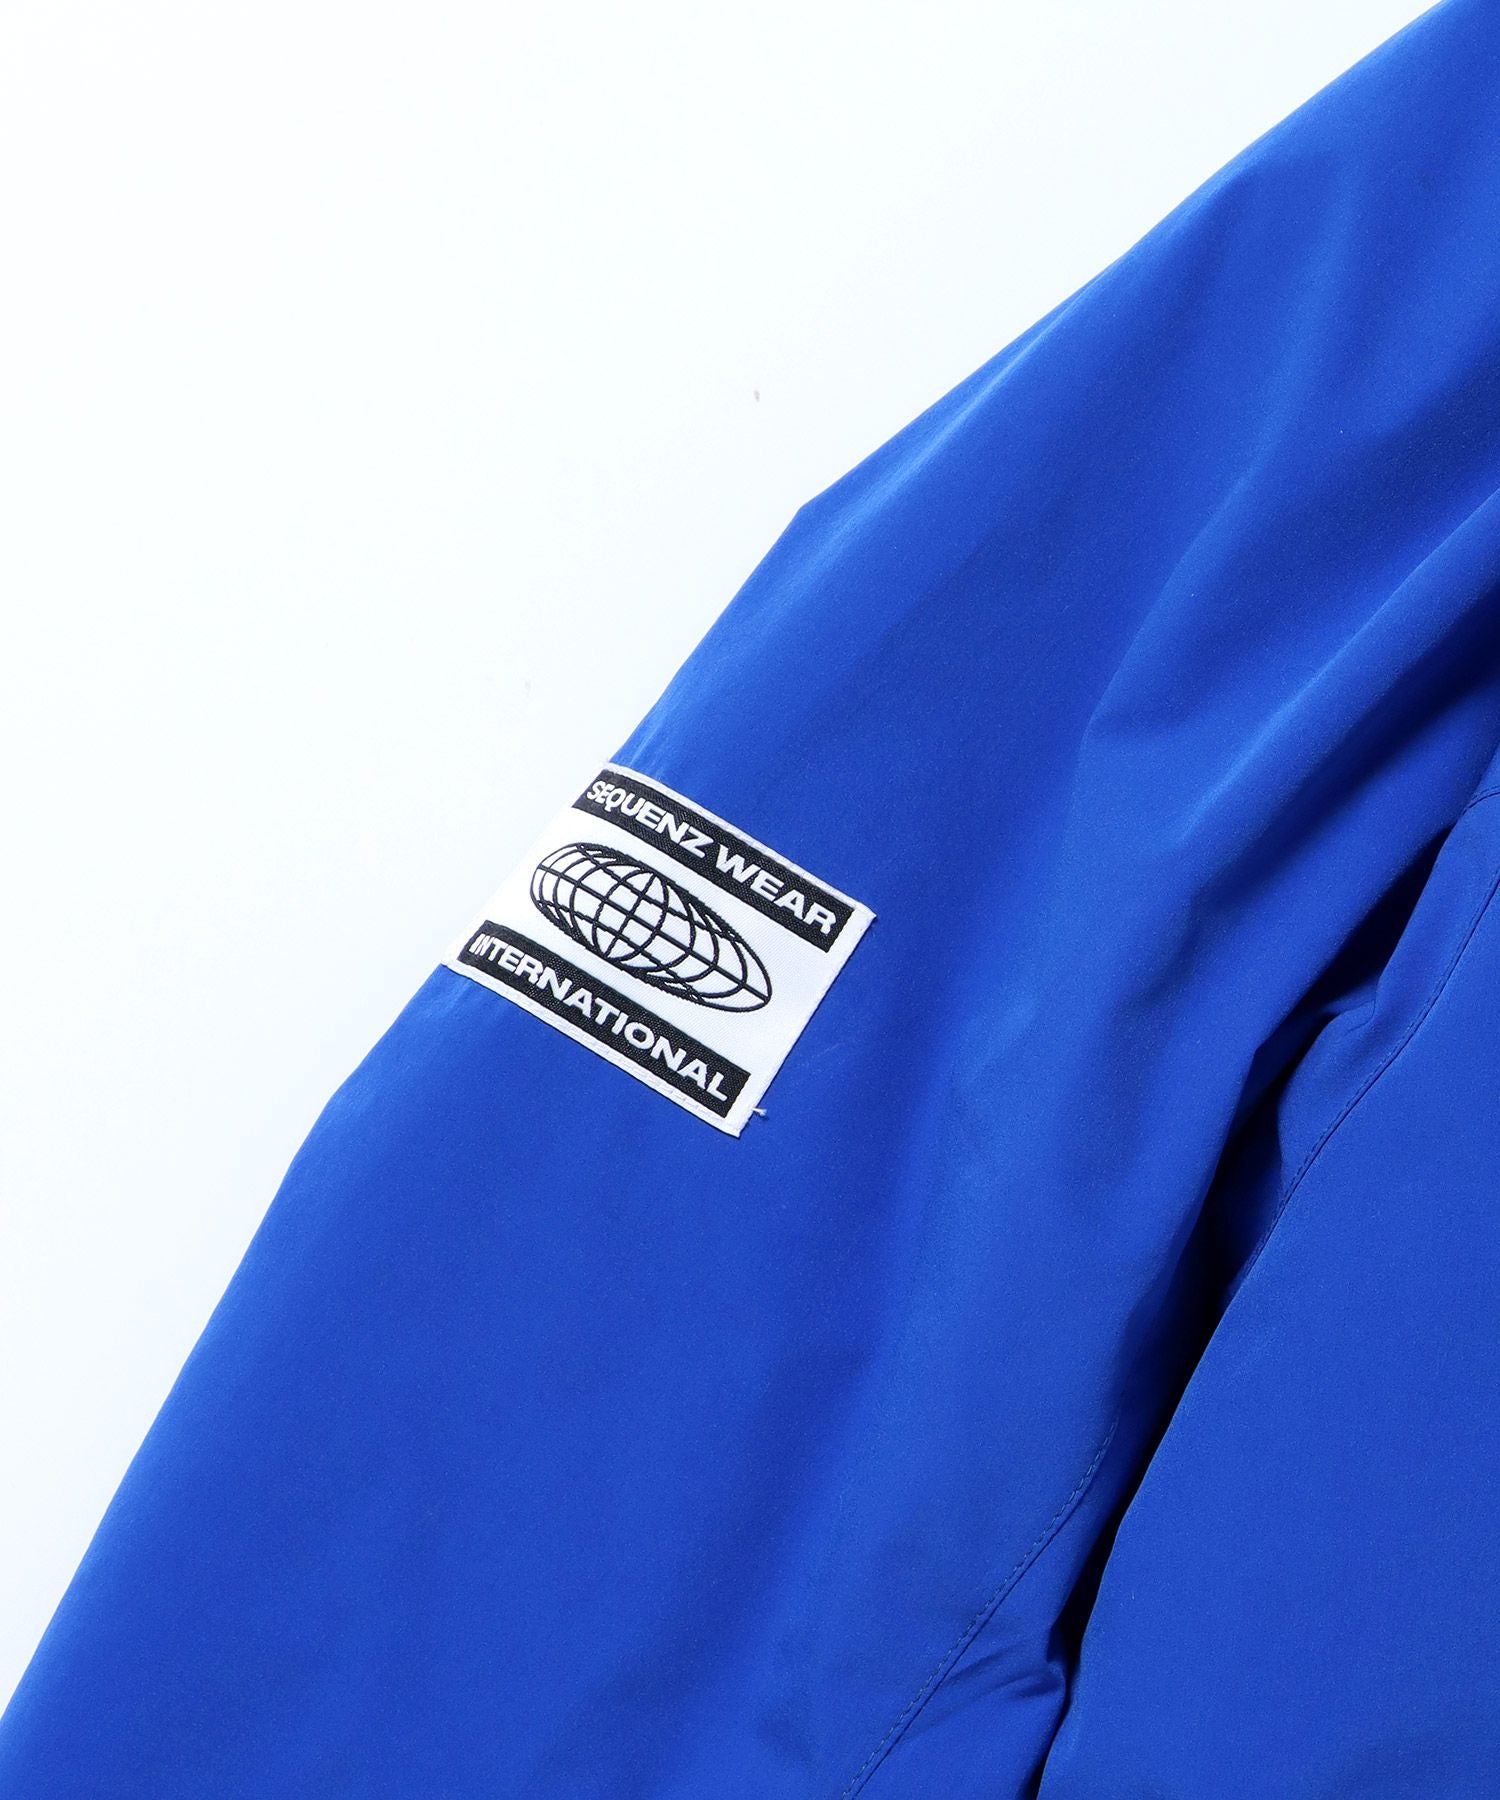 【SEQUENZ】 TECH PUFFER JACKET / ワンポイントロゴ 刺繍 ラグラン パファージャケット ドローコード ブルー